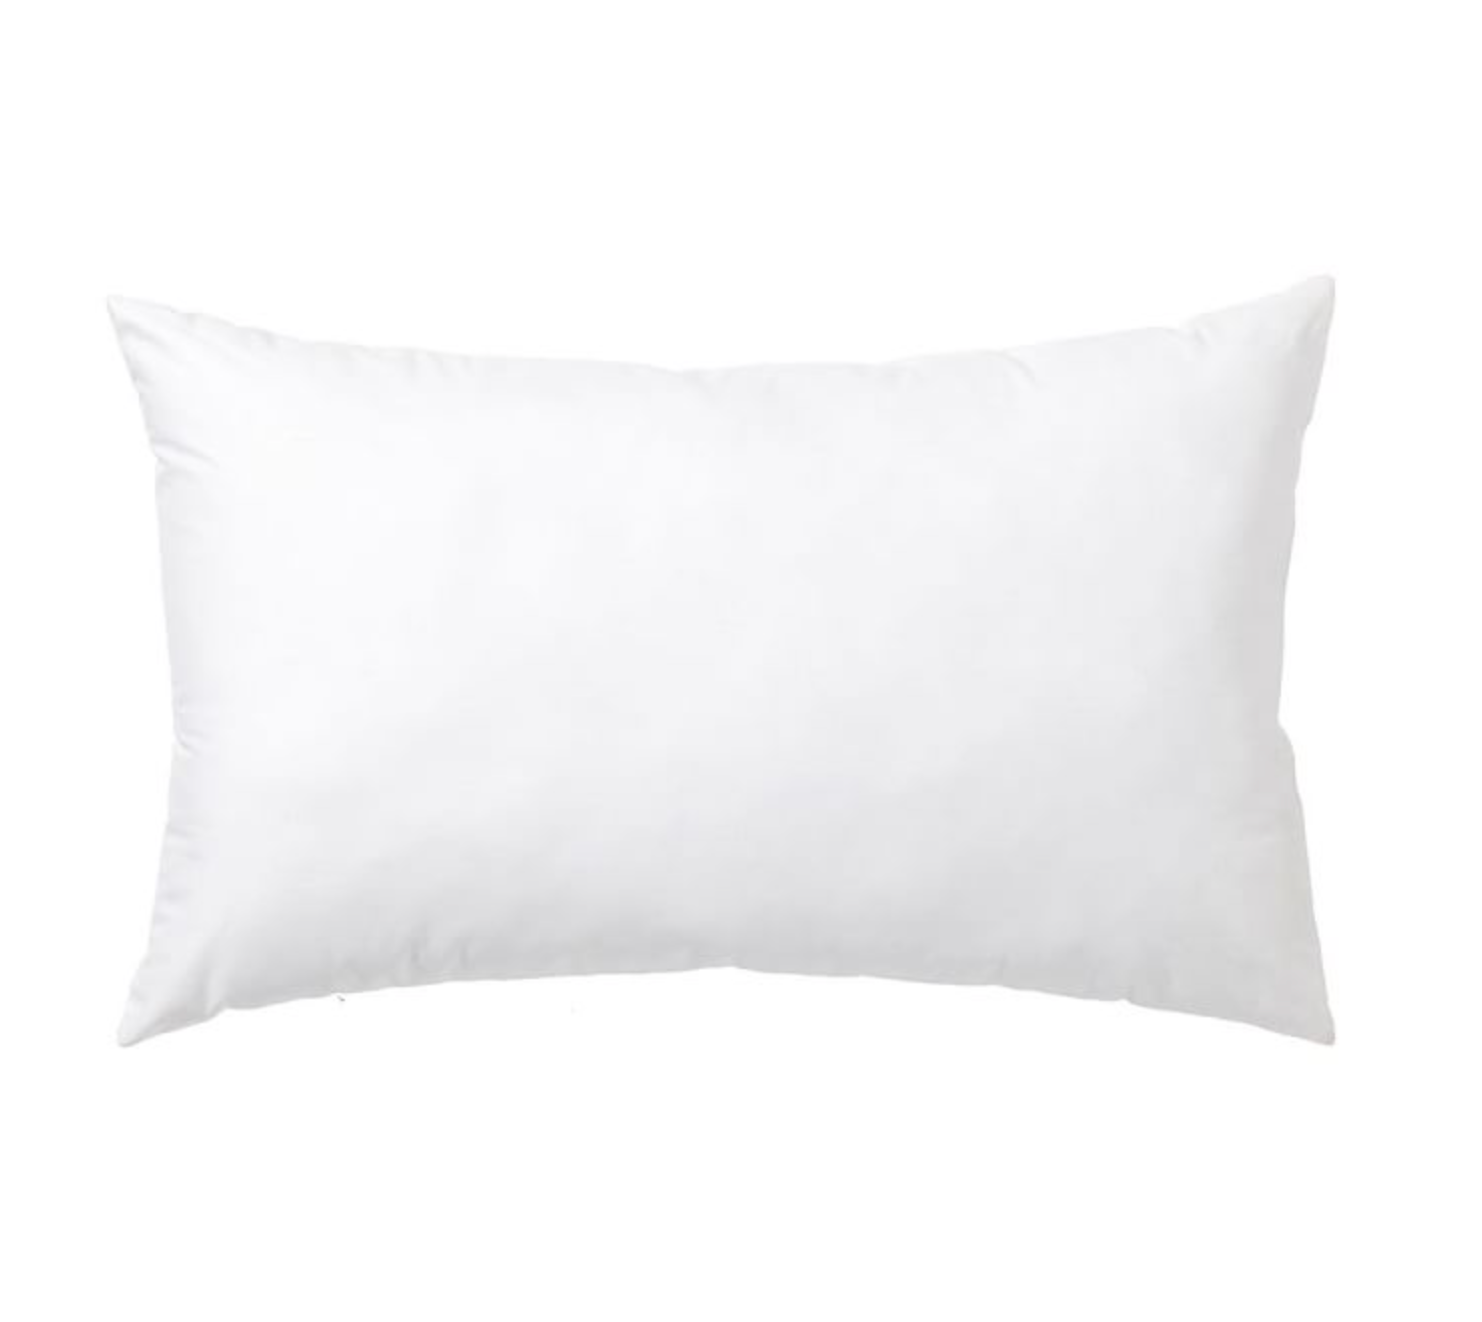 Pillow Inserts, Custom Size Pillow Inserts, Decorative Pillow Inserts, Down Feather Pillow Inserts, Long Lumbar Pillow Inserts, Hackner Home, Decorative Pillows, Pillow Shop